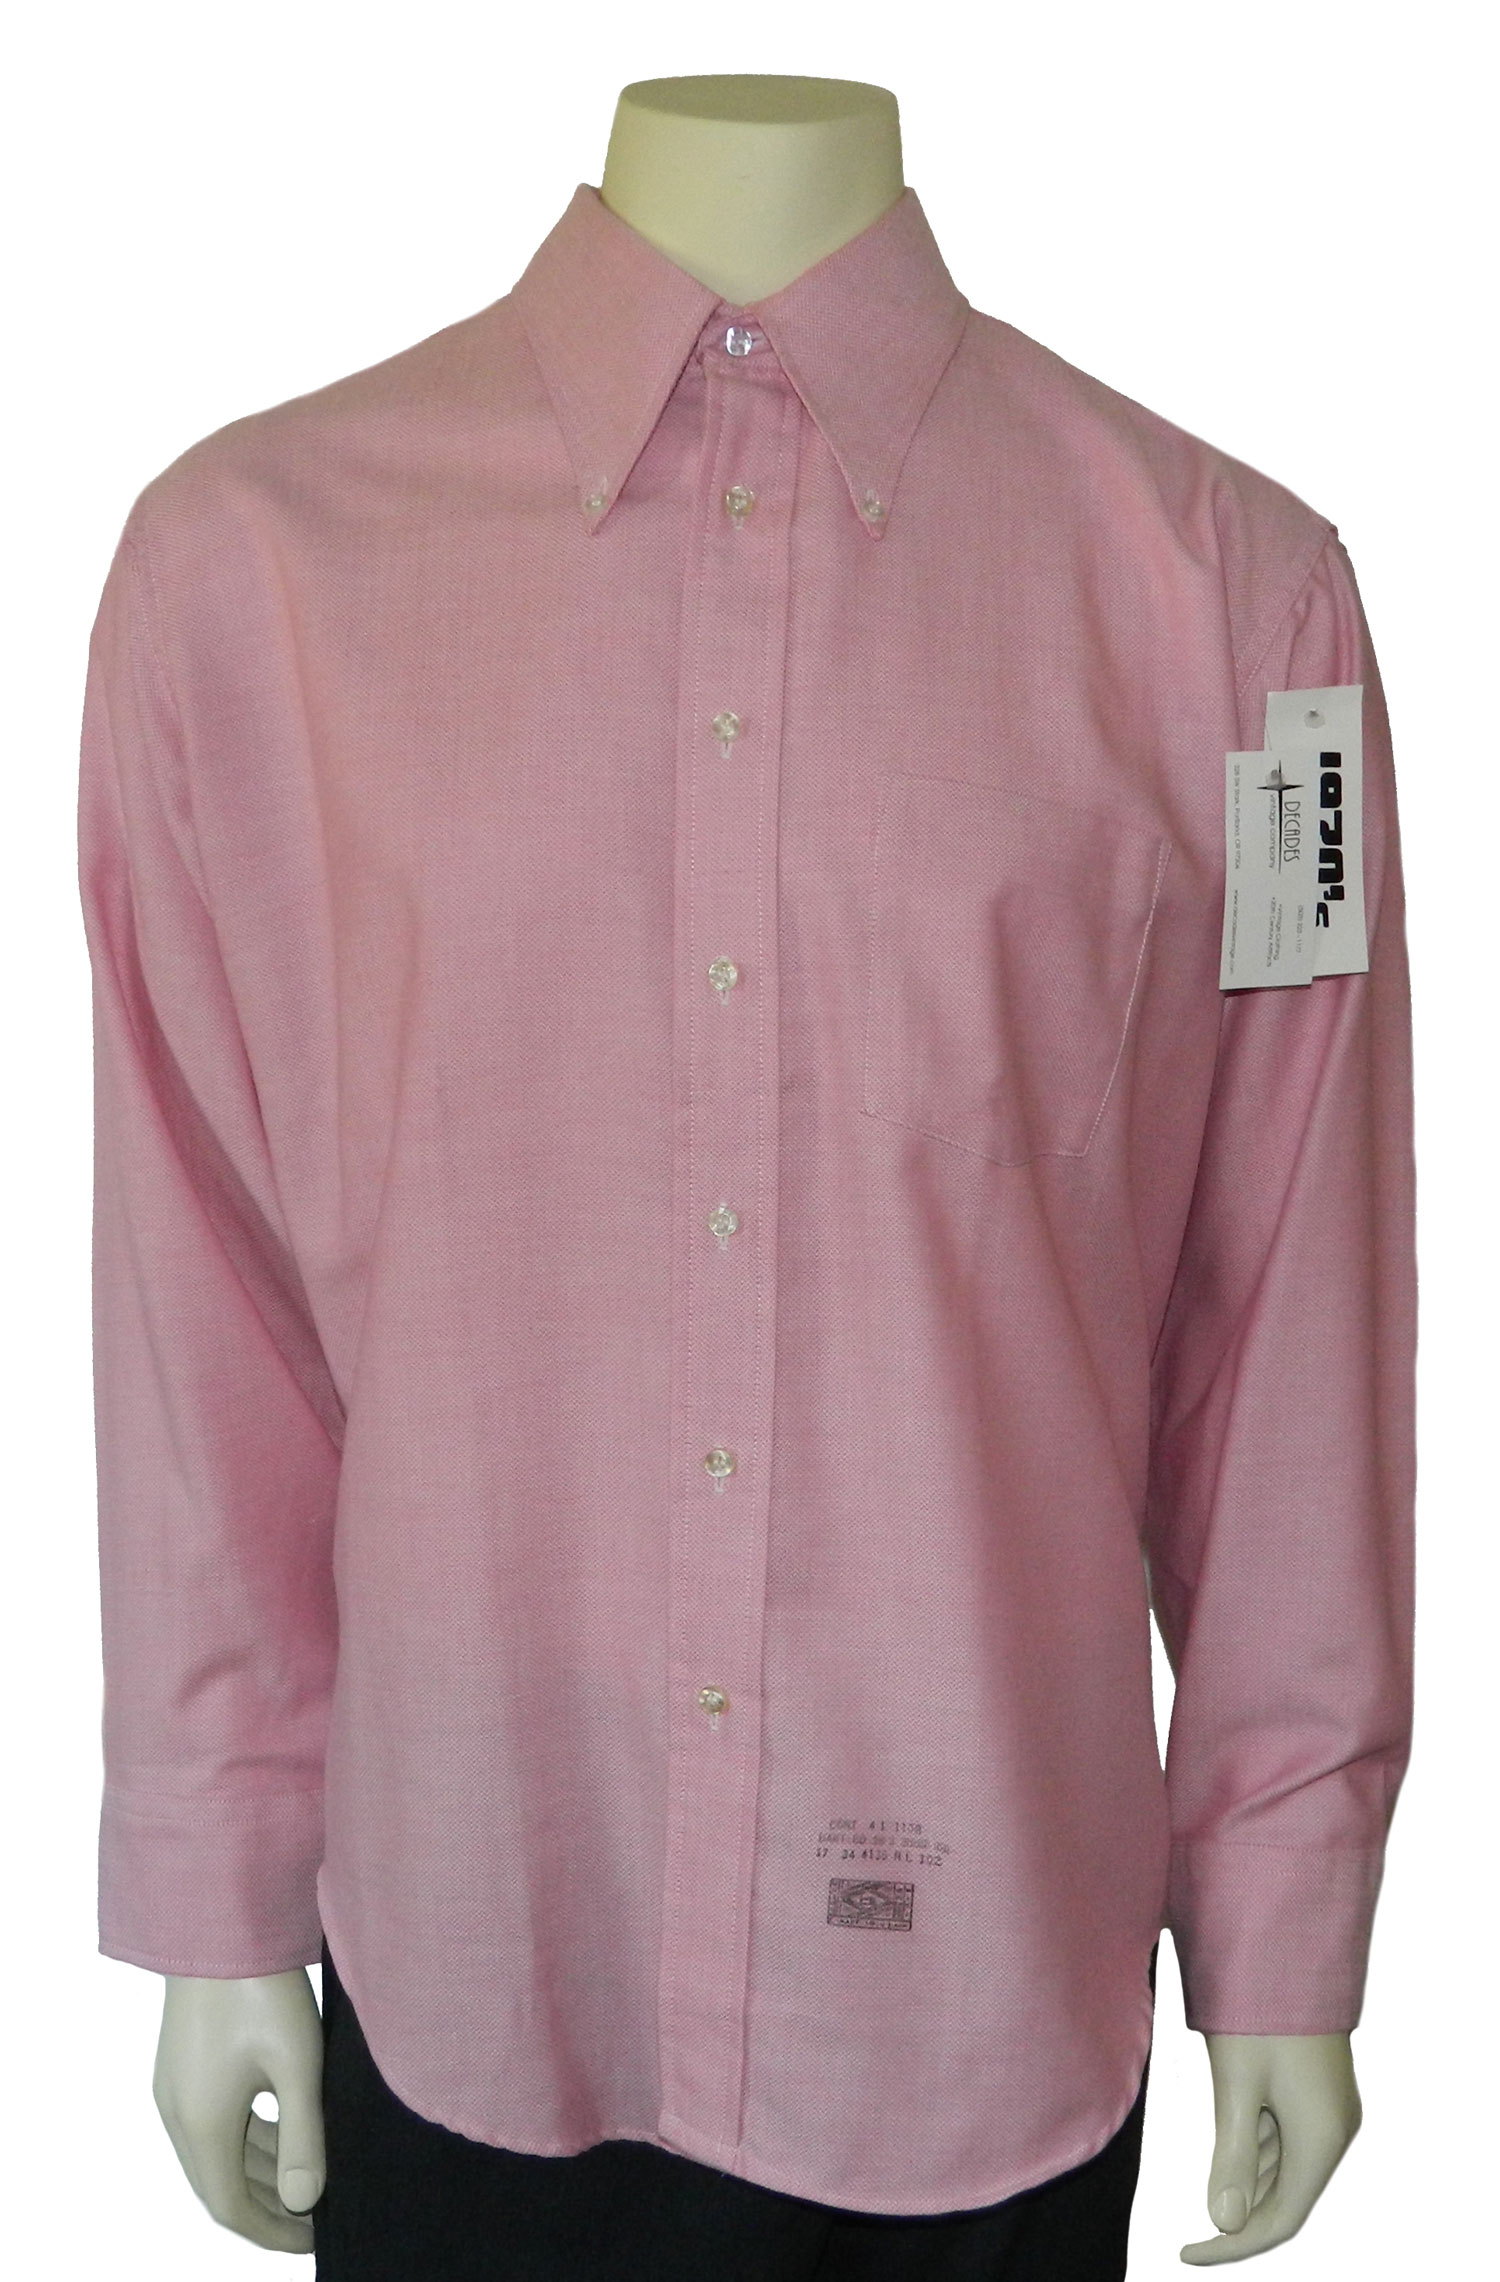 1970s pink dress shirt